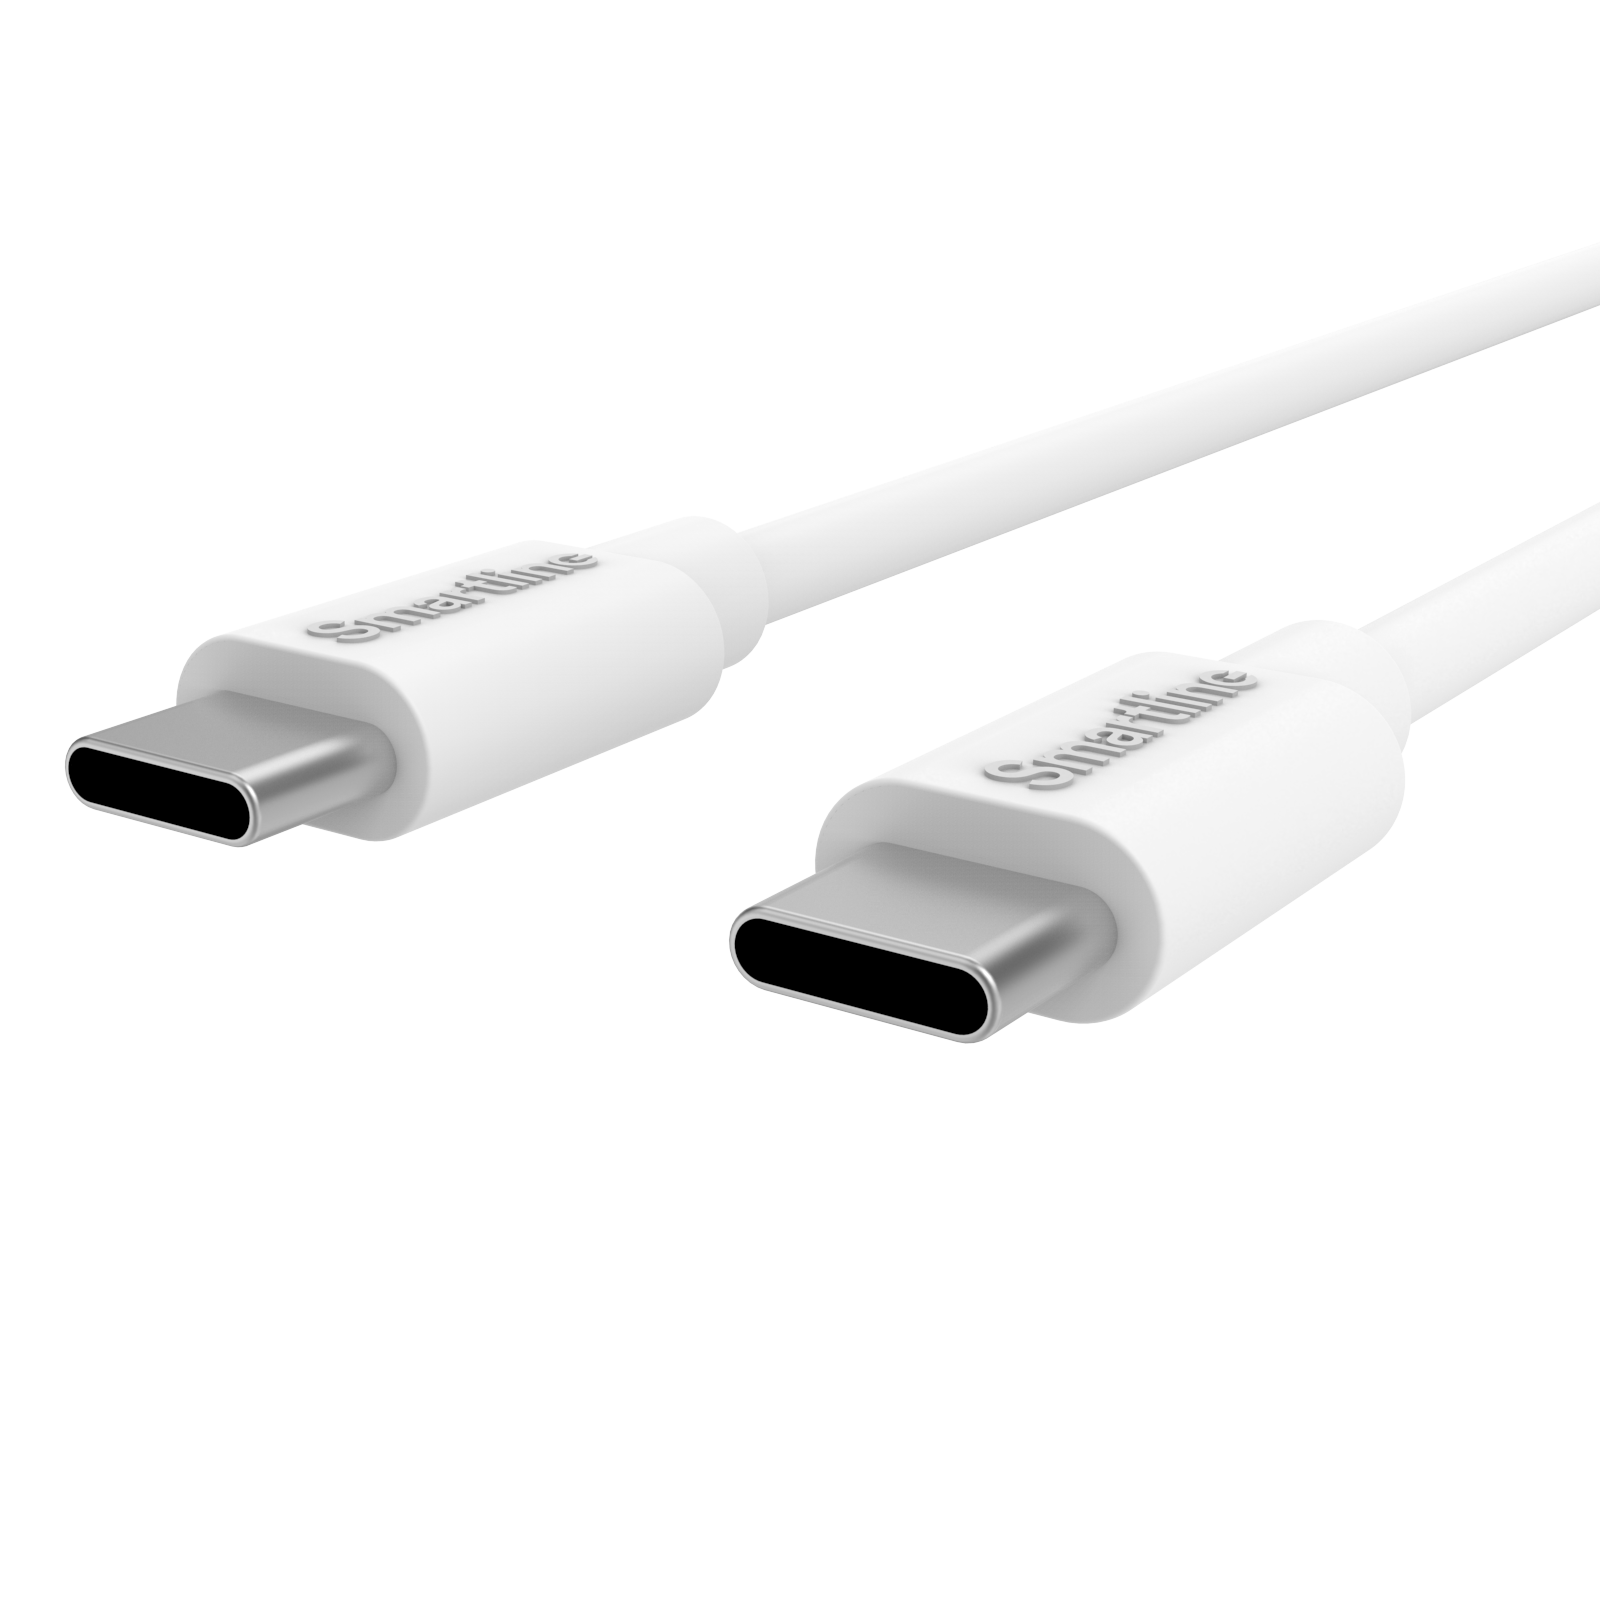 Chargeur complet de voiture - Câble USB-C de 1m et chargeur USB-C - Smartline